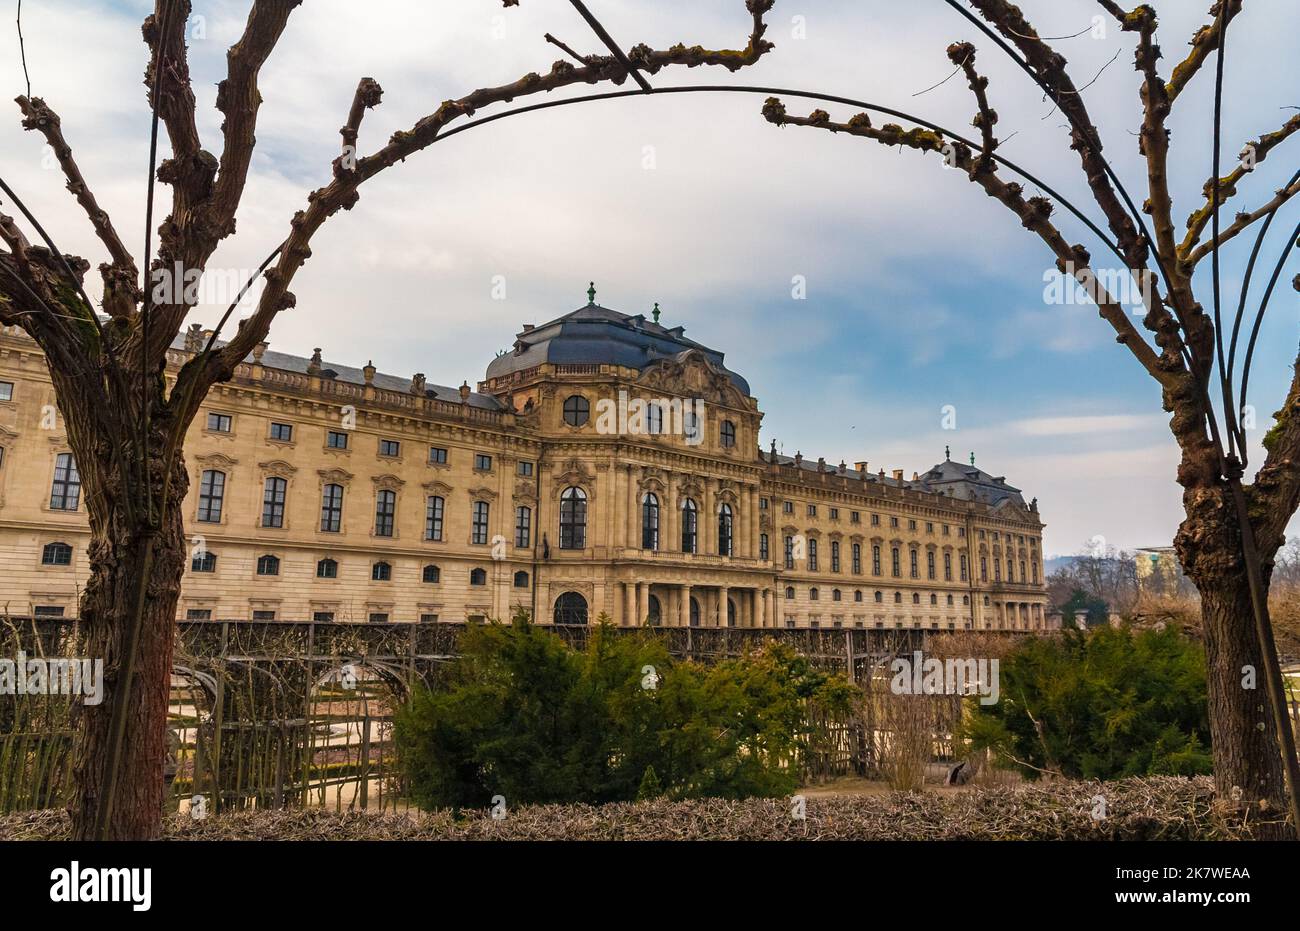 Malerischer Blick auf die Gartenfassade der berühmten Würzburger Residenz, umrahmt von einer Laublosen Lärchenhalle im Frühjahr. façade Seit 1981 hat die Residenz... Stockfoto